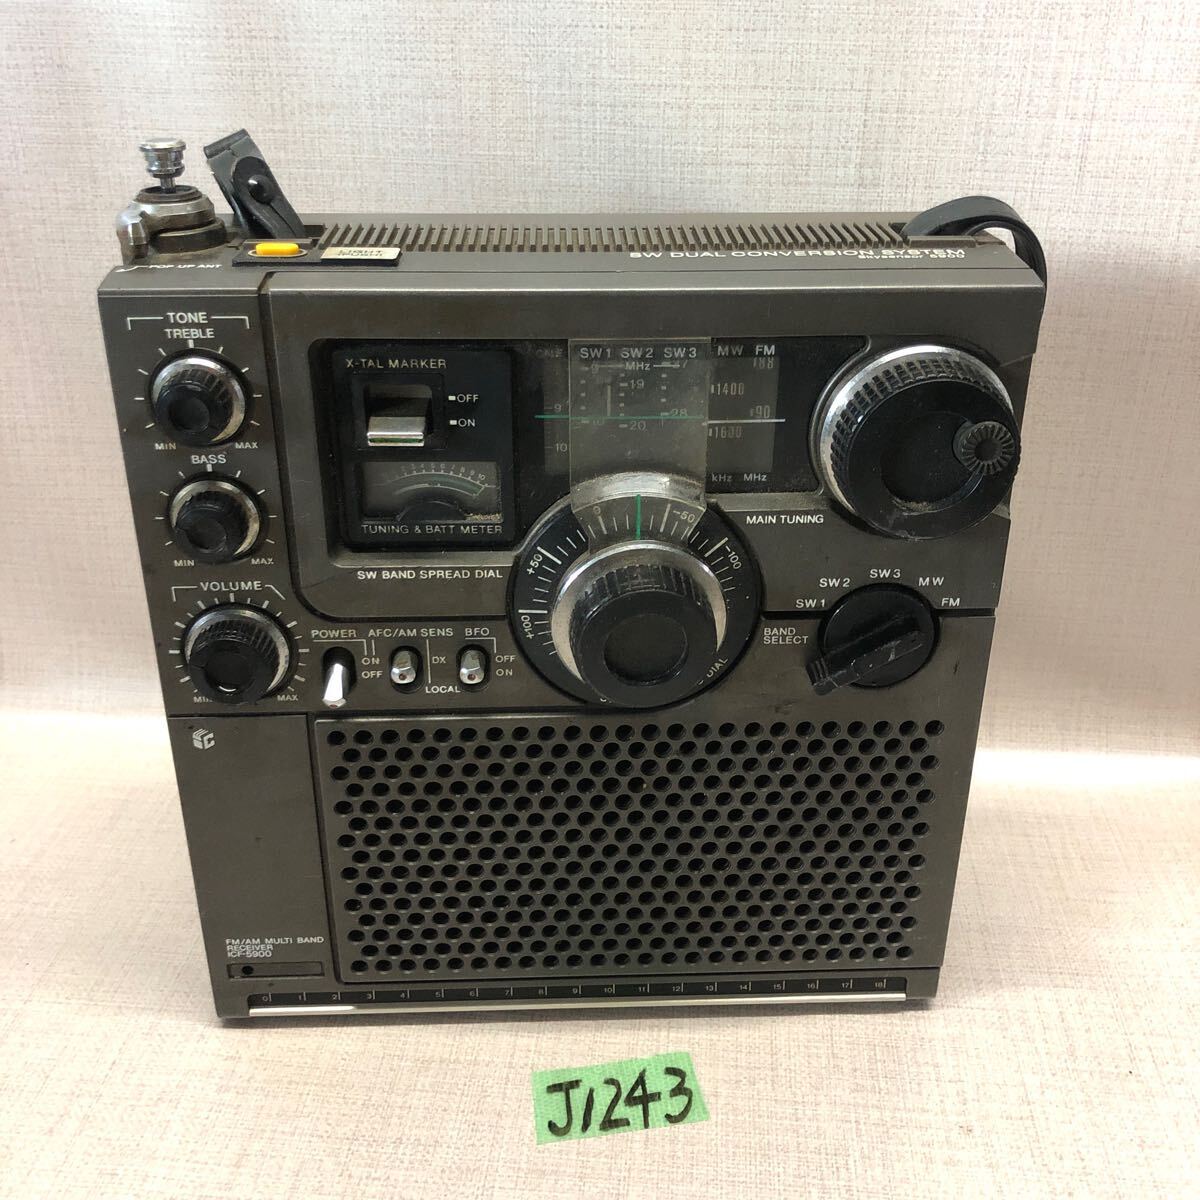 (J1243)FM受信OK SONY ソニー ICF-5900 オーディオ機器 ラジオ アンティーク 昭和レトロ 本体のみの画像1